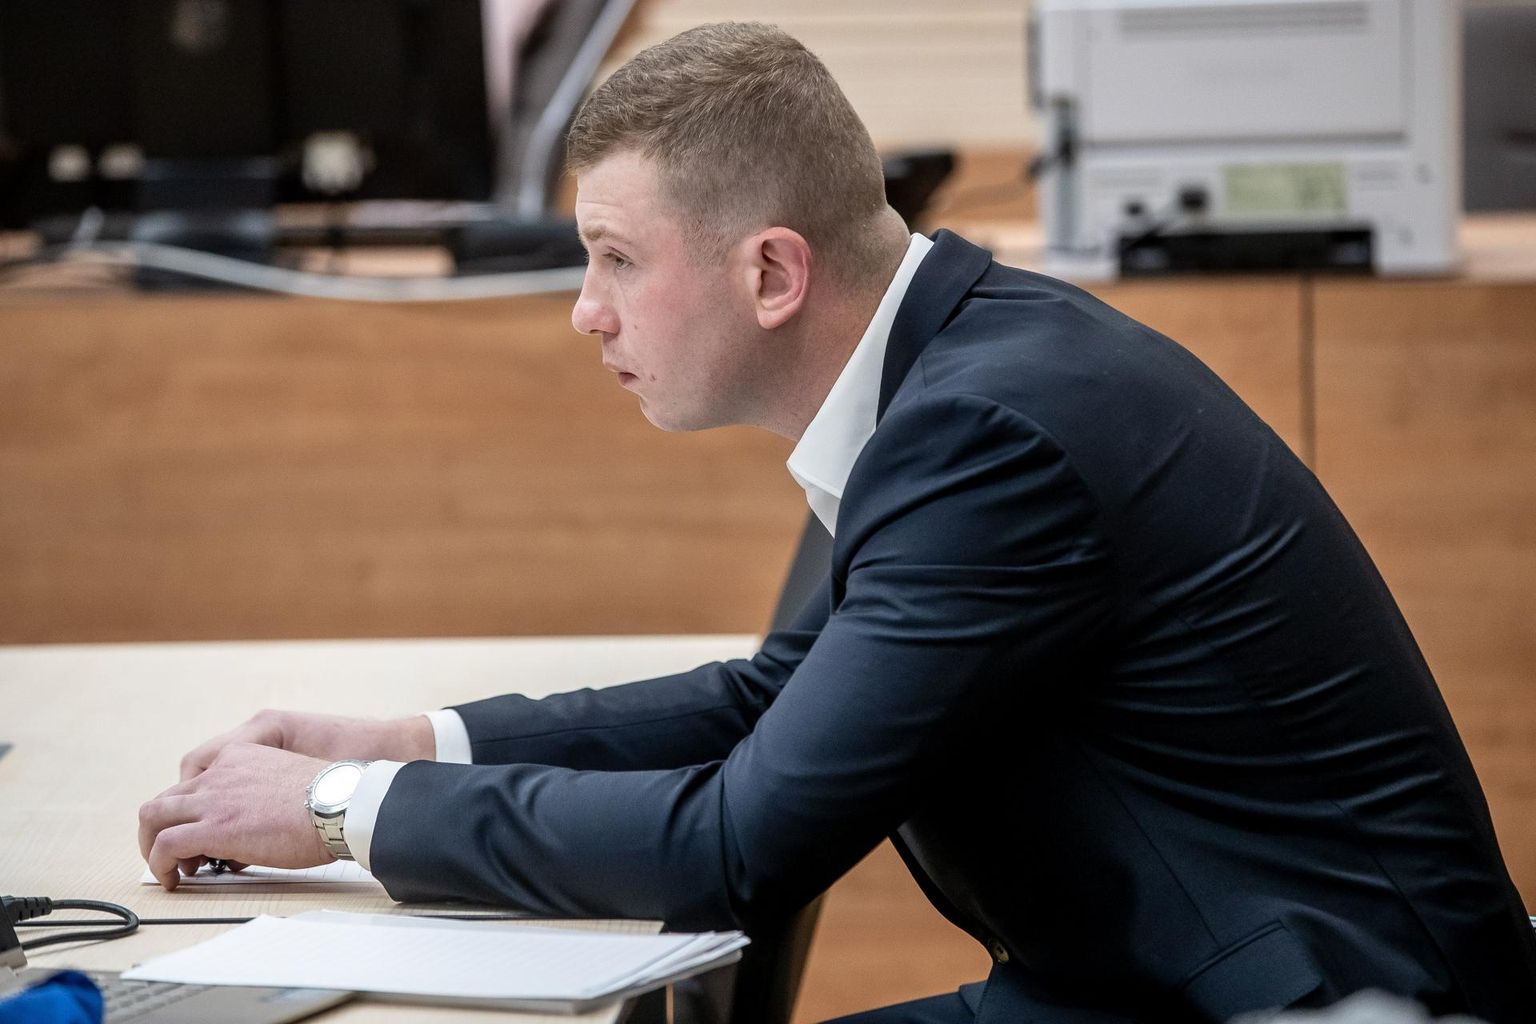 Dmitri Doroškevitš nimetab oma tegu hädakaitseks, aga eile kohtus esinenud tunnistaja jutust nähtub, et Artjom Kremenski teetöölisele ohtu ei kujutanud.